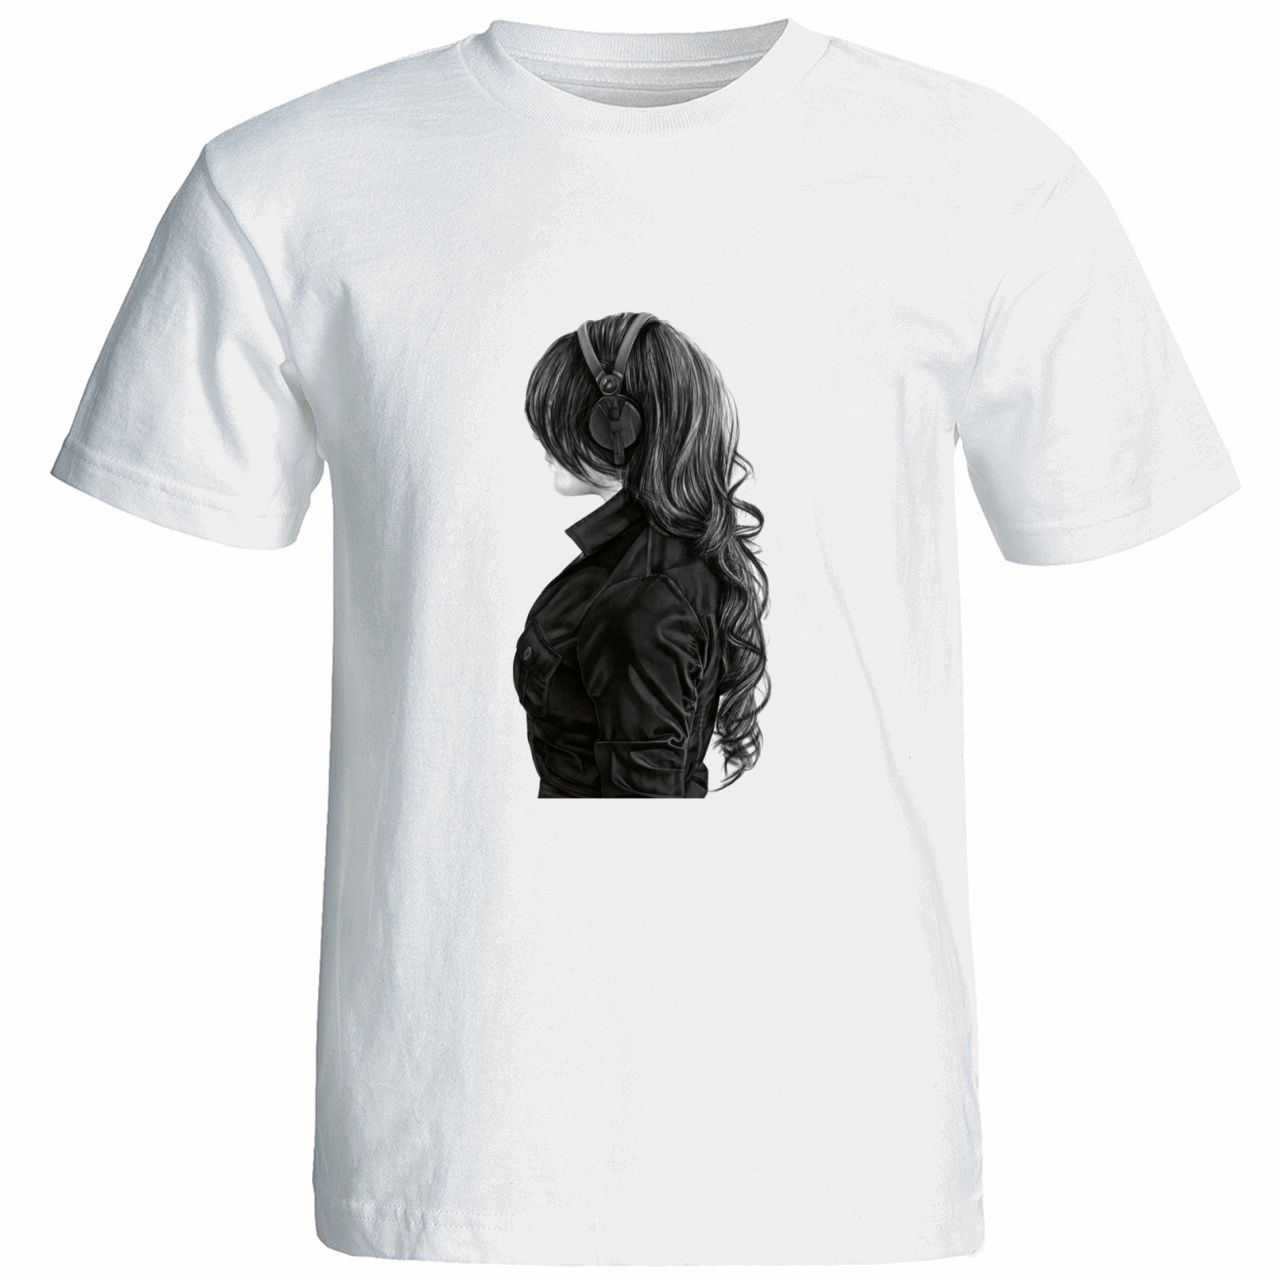 تی شرت زنانه آستین کوتاه نوین نقش طرح کد 9540 -  - 1